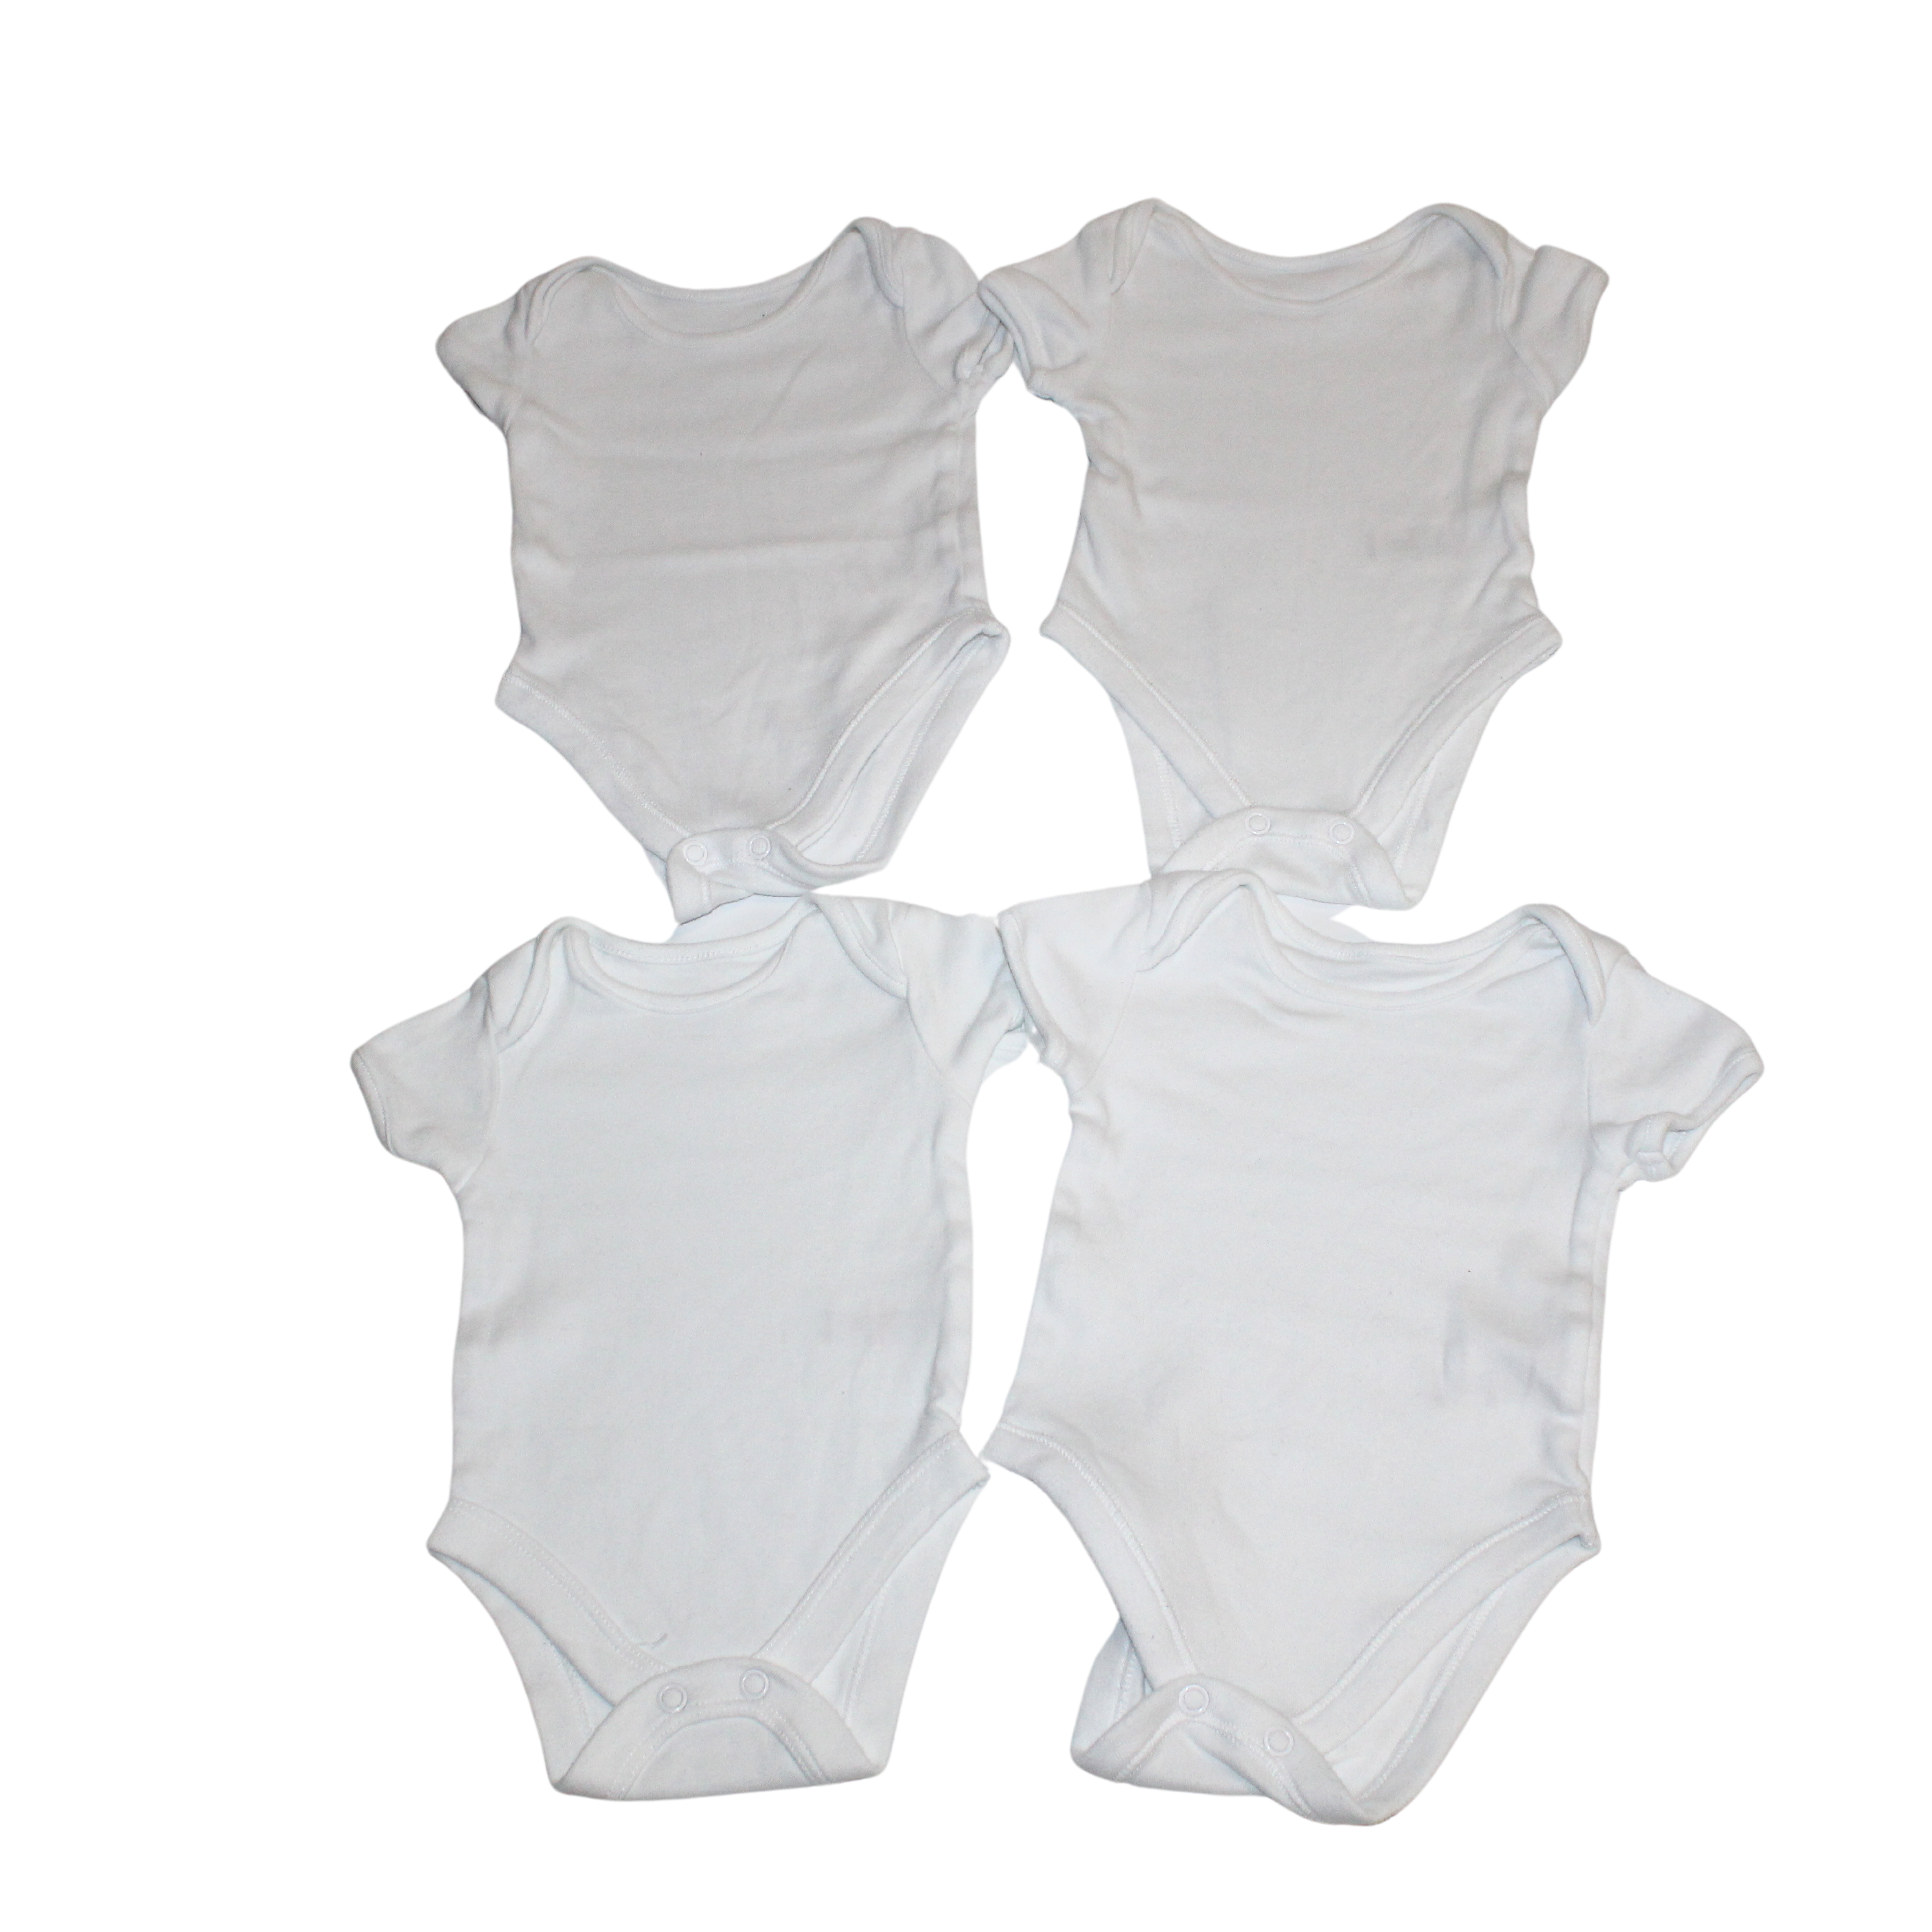 4x White Vests